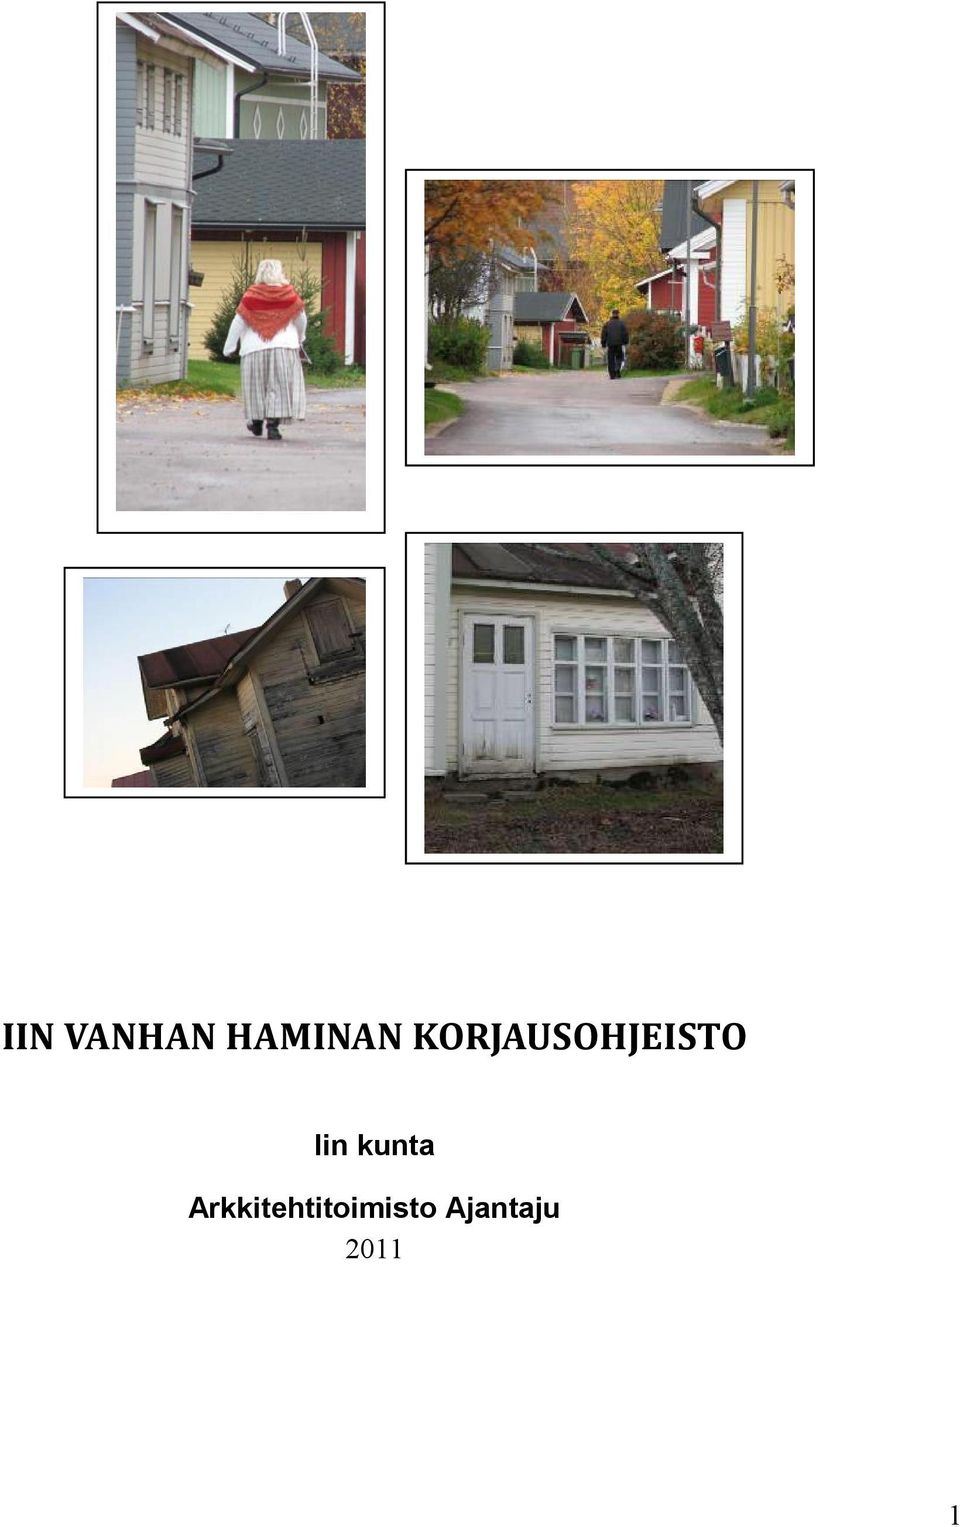 IIN VANHAN HAMINAN KORJAUSOHJEISTO - PDF Free Download